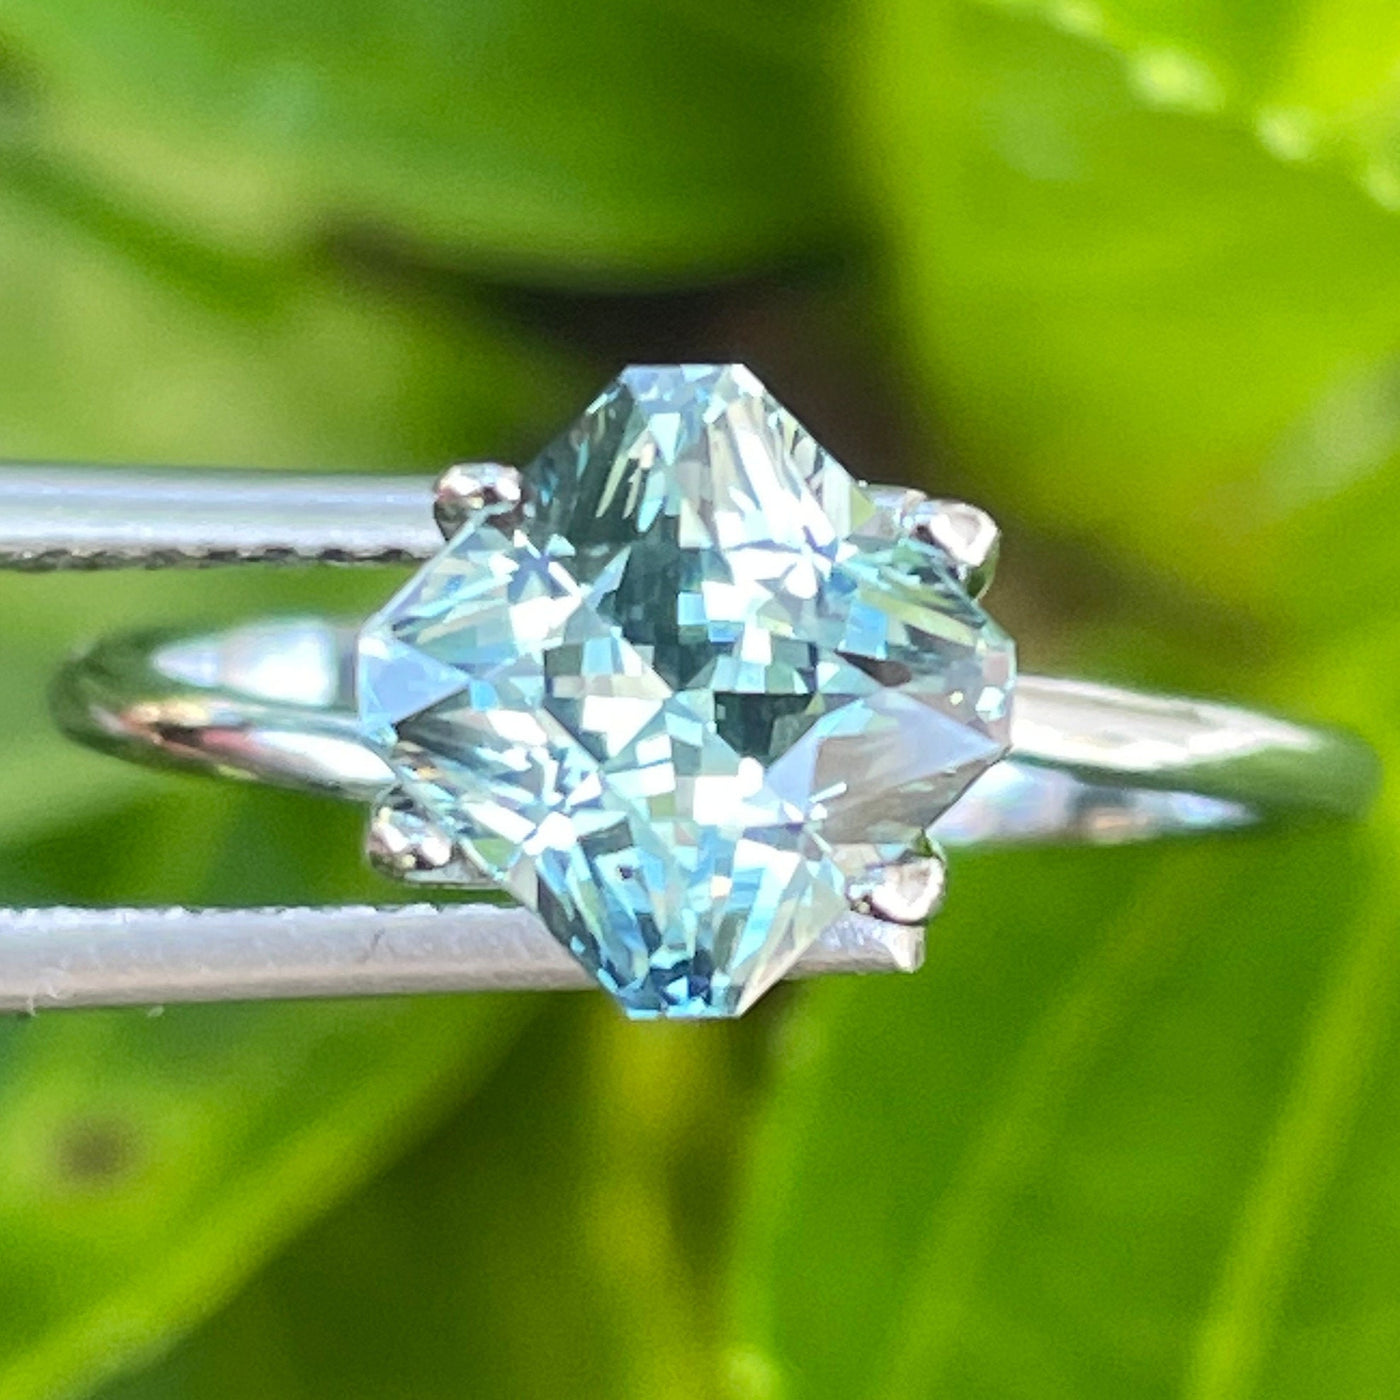 Teal Sapphire l 2.19 Ct l 6.6x 6.5x 4.9mm l Cushion l Unheated l Madagascar l Natural Sapphire l Sapphire Ring l Engagement Ring